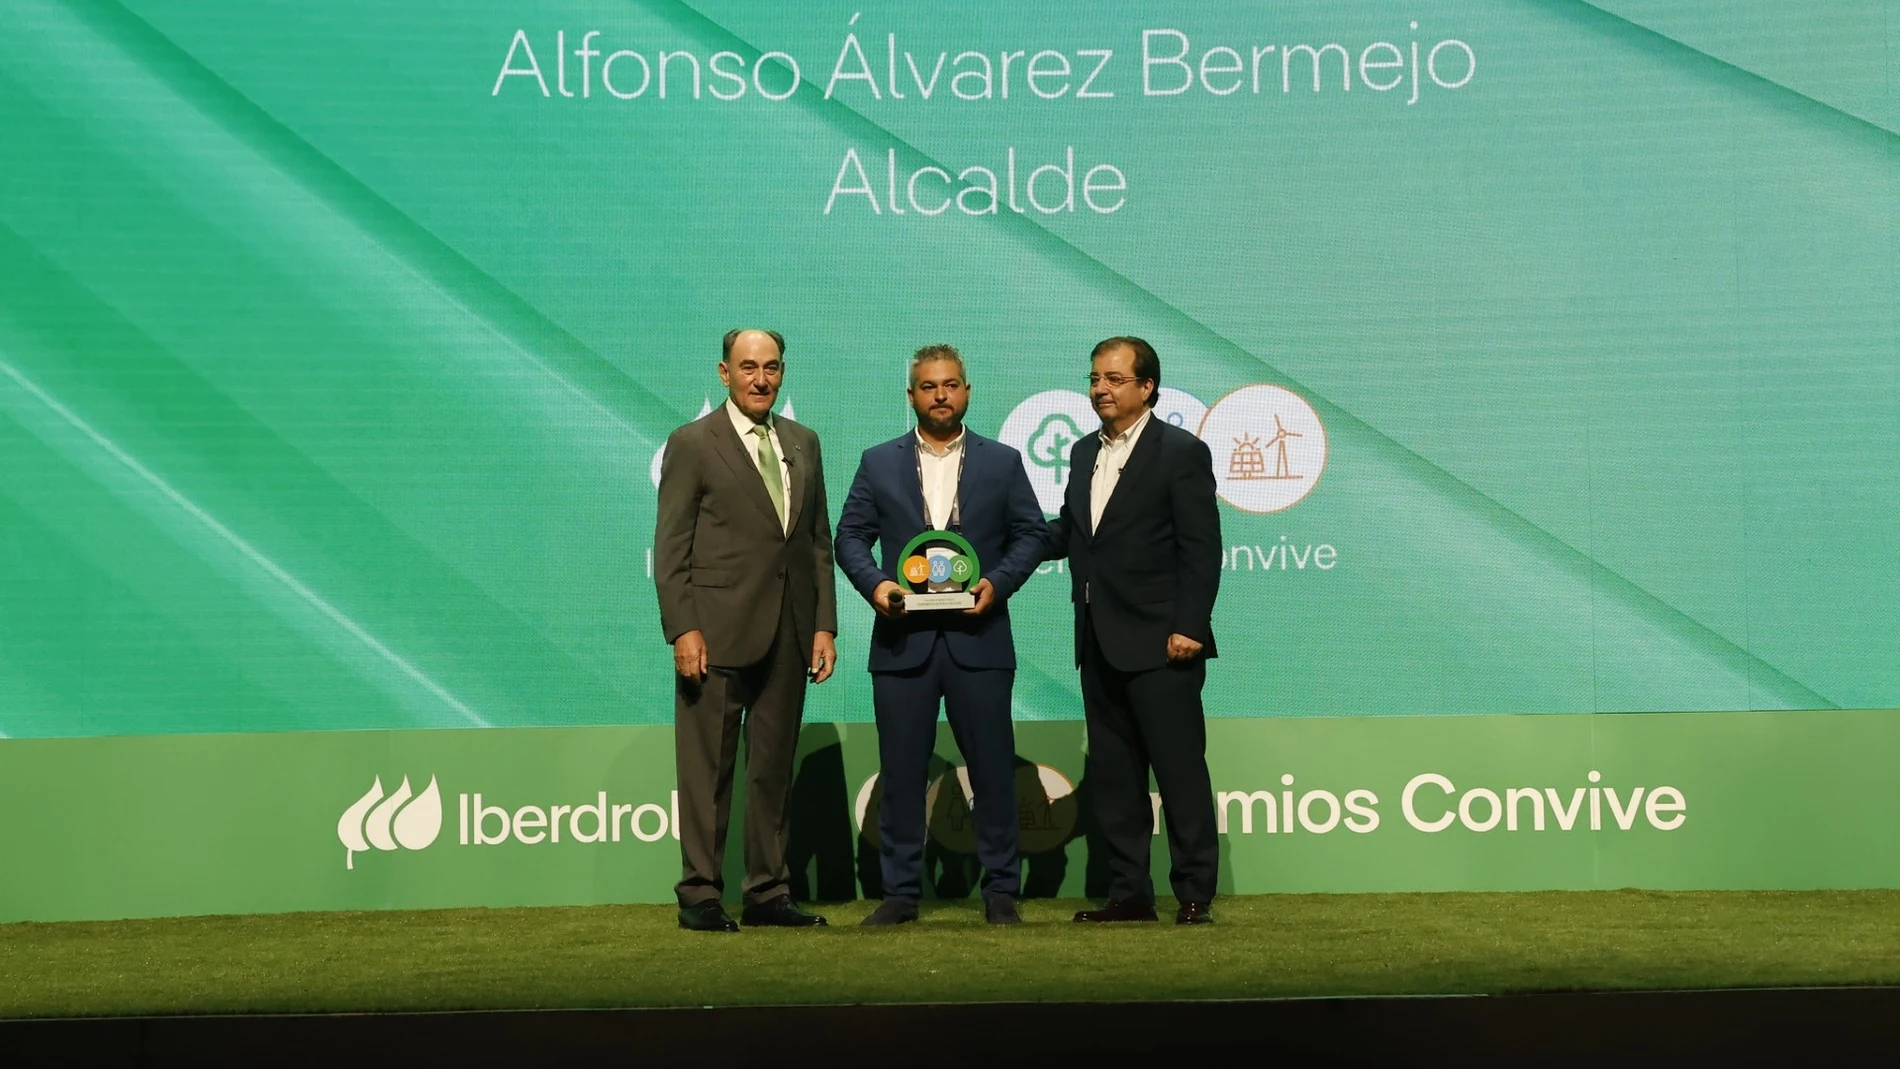 El alcalde de Revilla Vallejera, Alfonso Álvarez Bermejor, recibe el reconocimiento de manos de Ignacio Galán y de Guillermo Fernández Vara